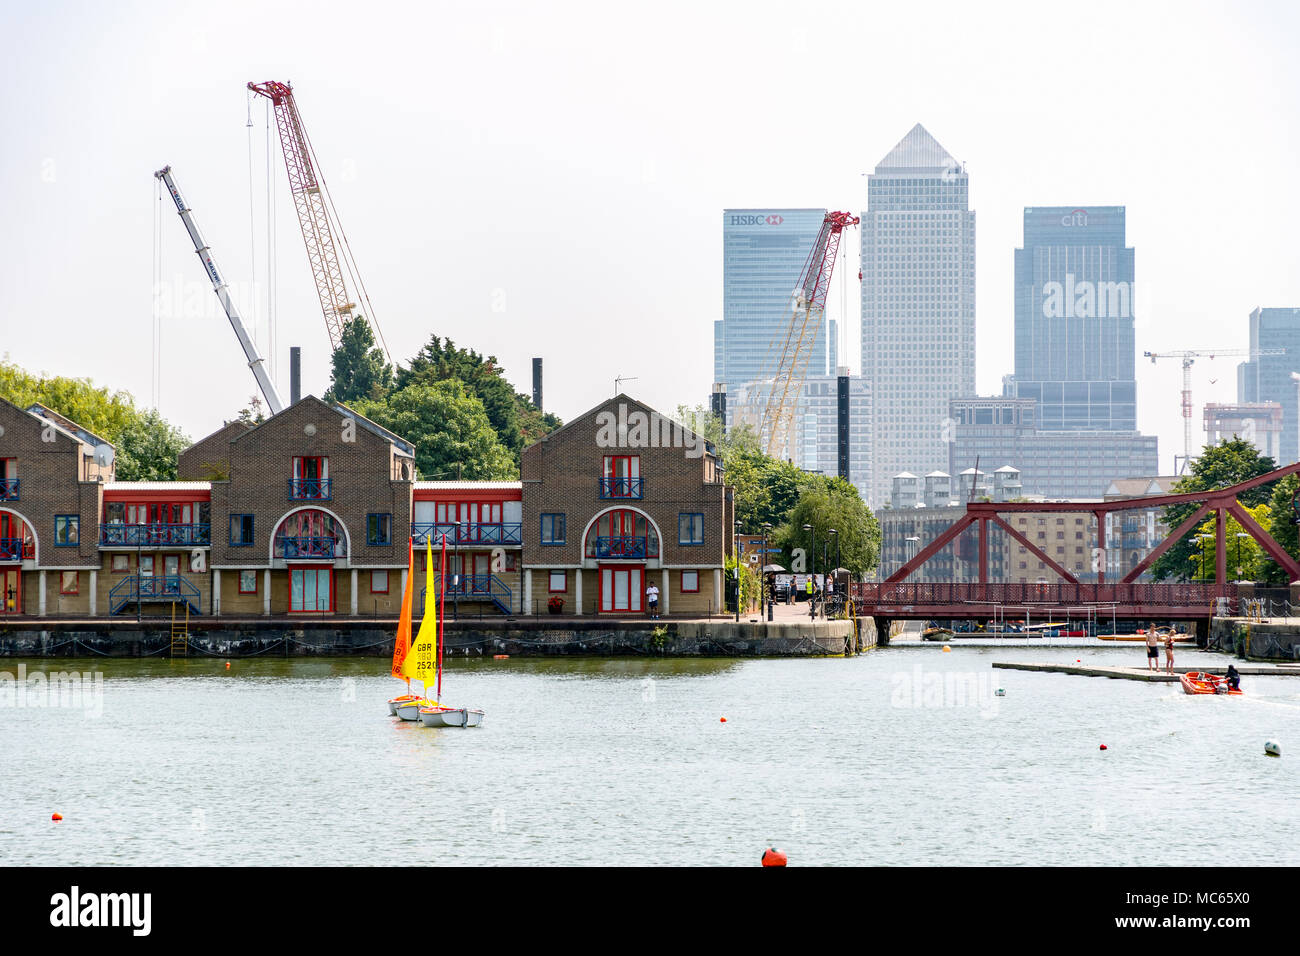 Londres, Royaume-Uni - 21 juin 2018 - Des gratte-ciel à Canary Wharf vu de Shadwell Basin Banque D'Images